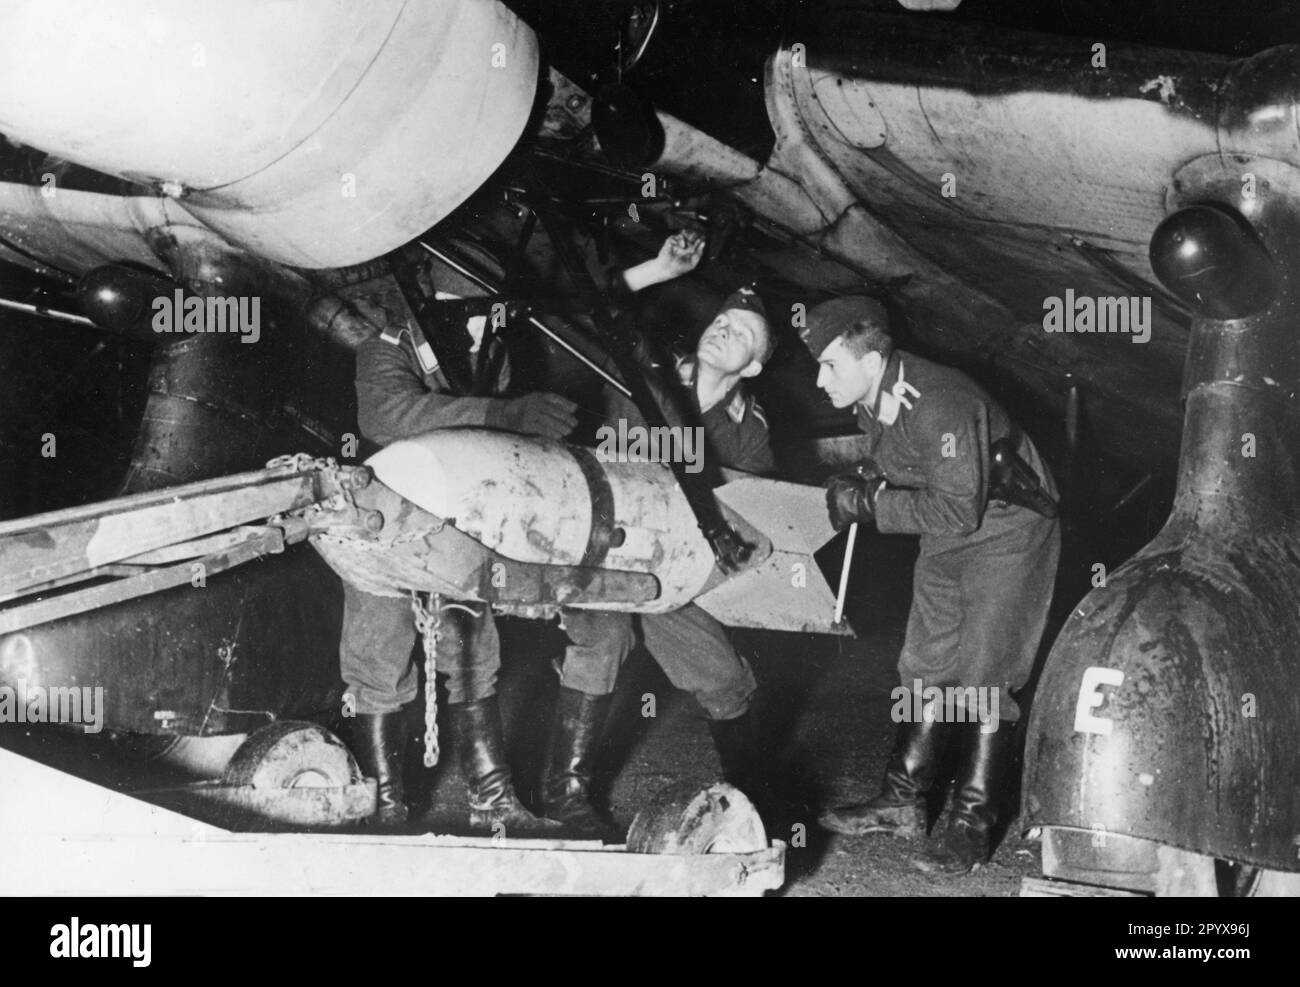 Das Bodenpersonal hängt eine Bombe unter einen Junkers Ju 87, um das Flugzeug für einen Nachtangriff vorzubereiten. Foto: Göbel [maschinelle Übersetzung] Stockfoto